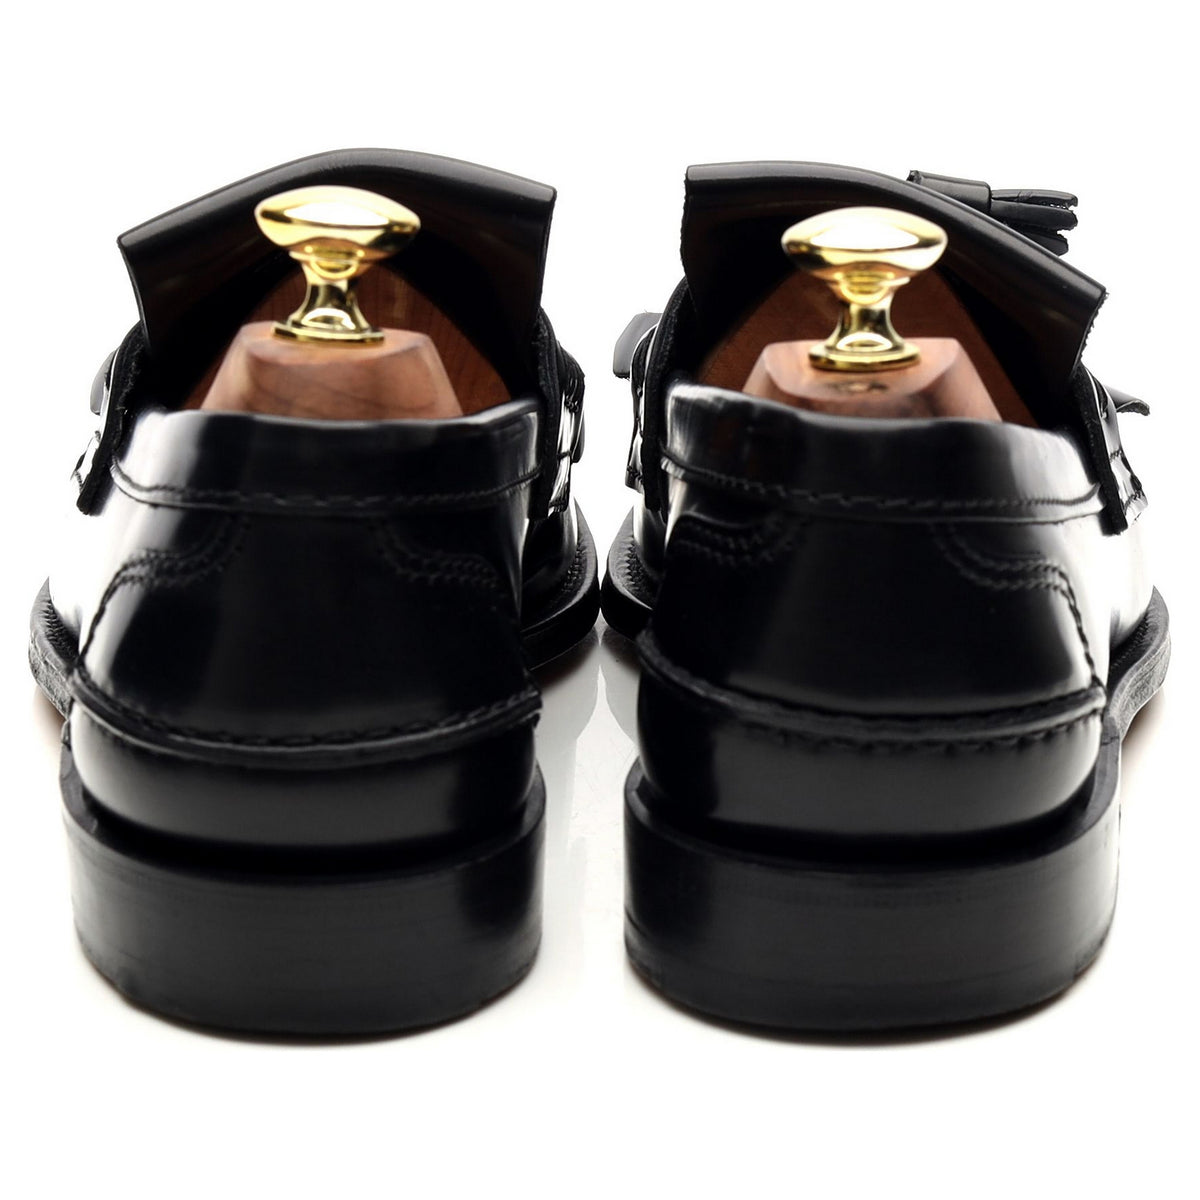 &#39;Oreham&#39; Black Leather Tassel Loafers UK 7 F